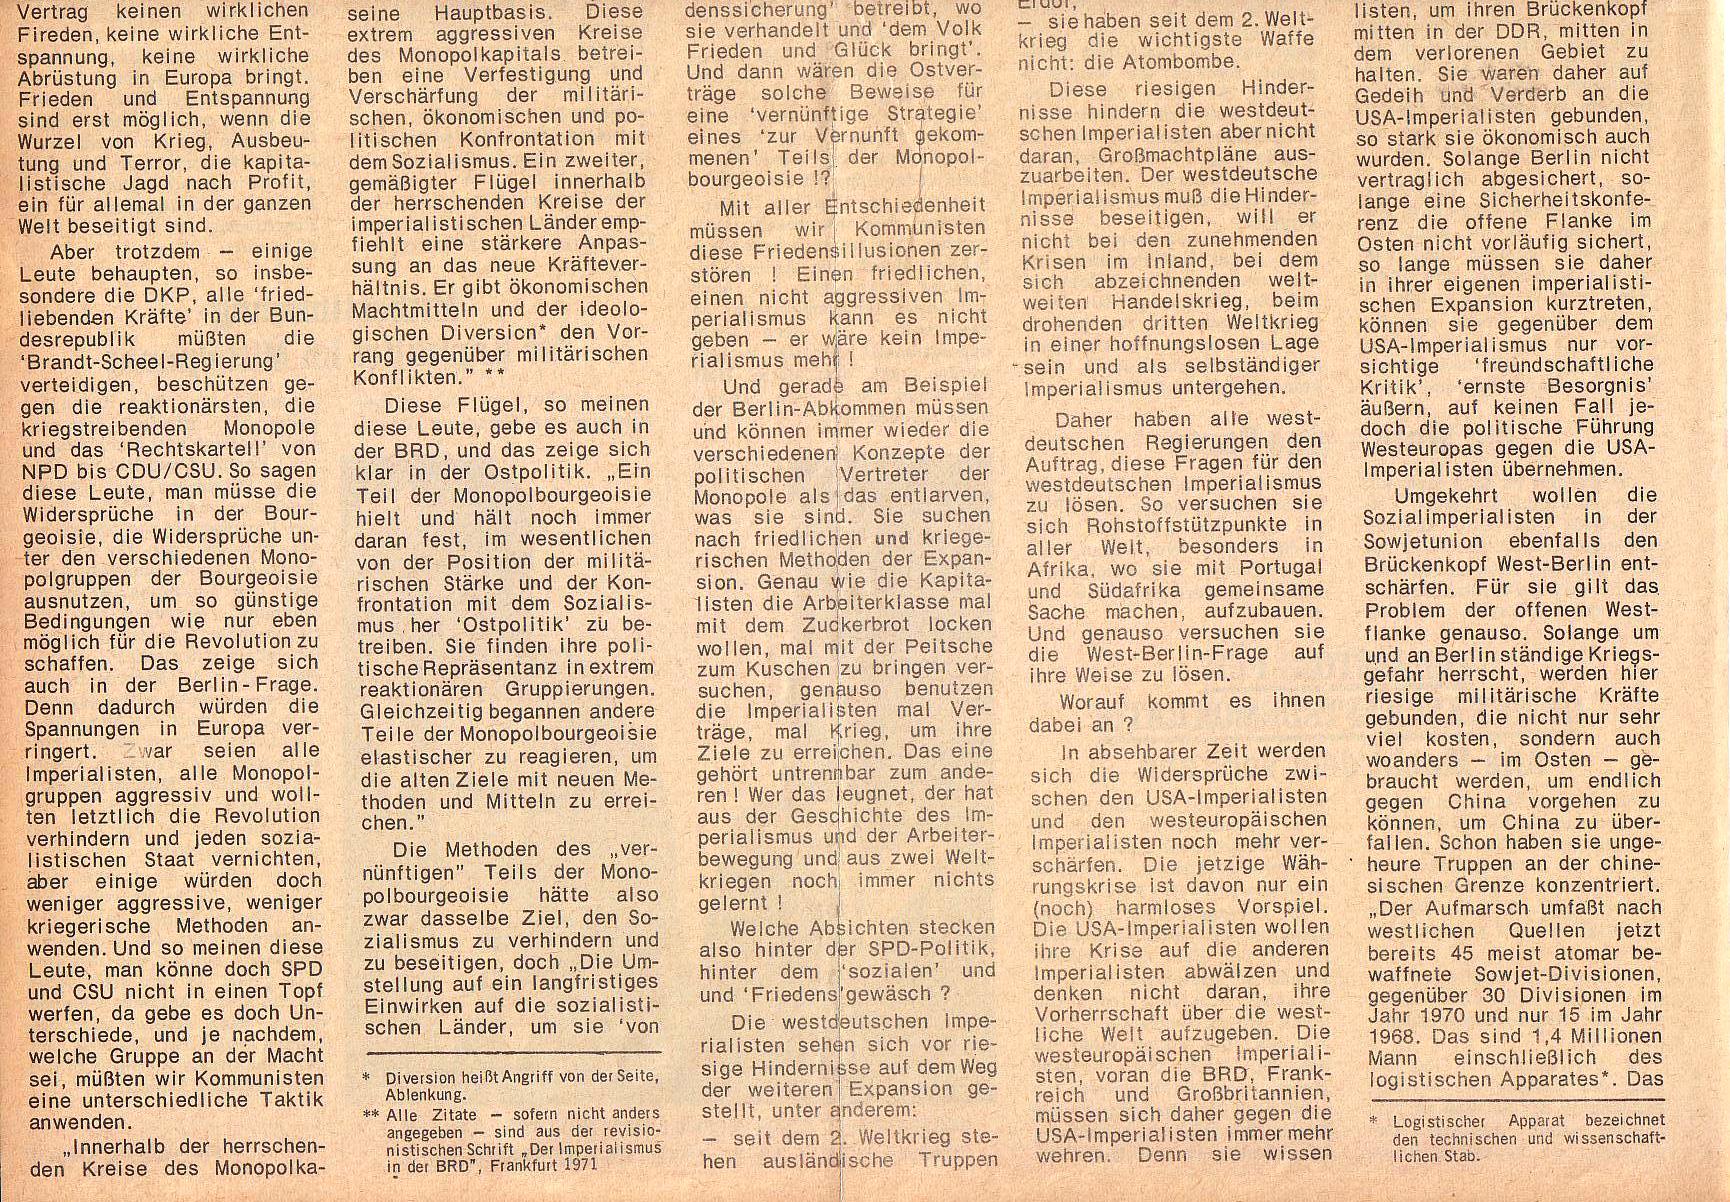 Roter Morgen, 5. Jg., 25. Oktober 1971, Nr. 12, Seite 6b